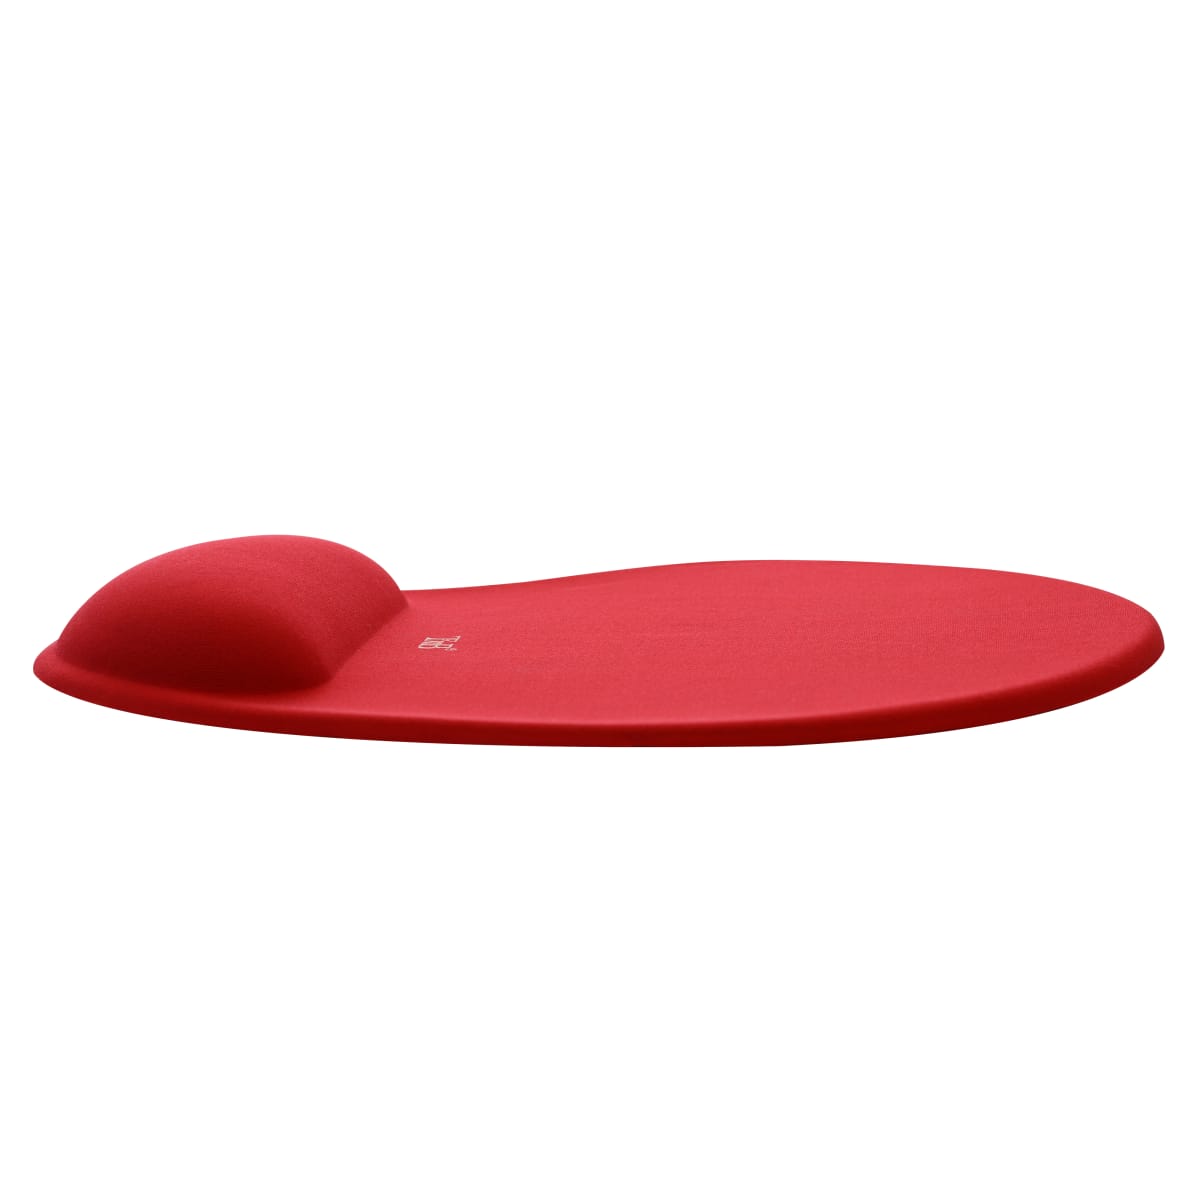 Tapis de souris ergonomique avec repose-poignet rouge